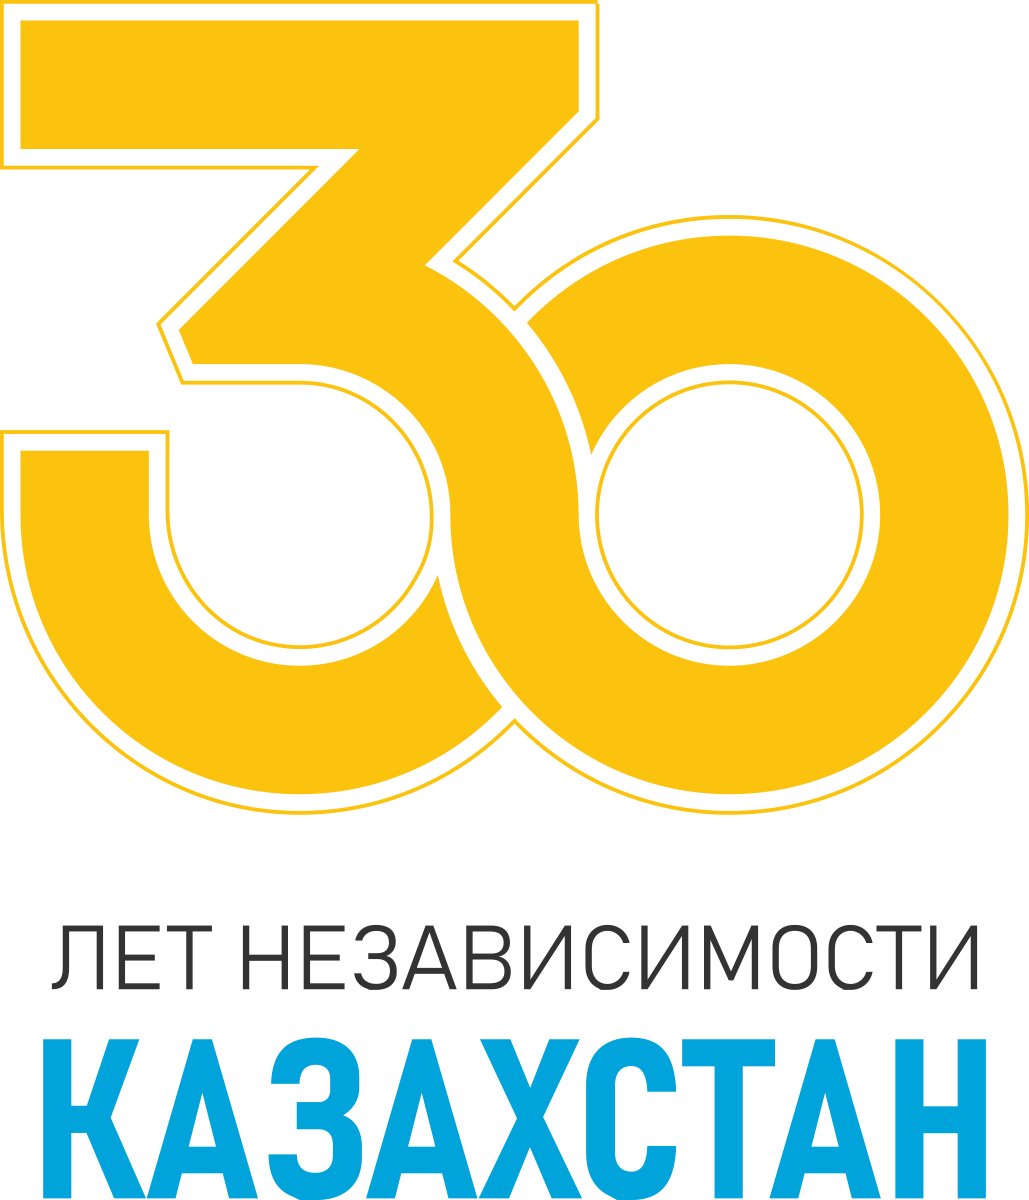 Қазақстан Республикасының Тәуелсіздігіне 30 жыл. 30 лет Независимости Республики Казахстан